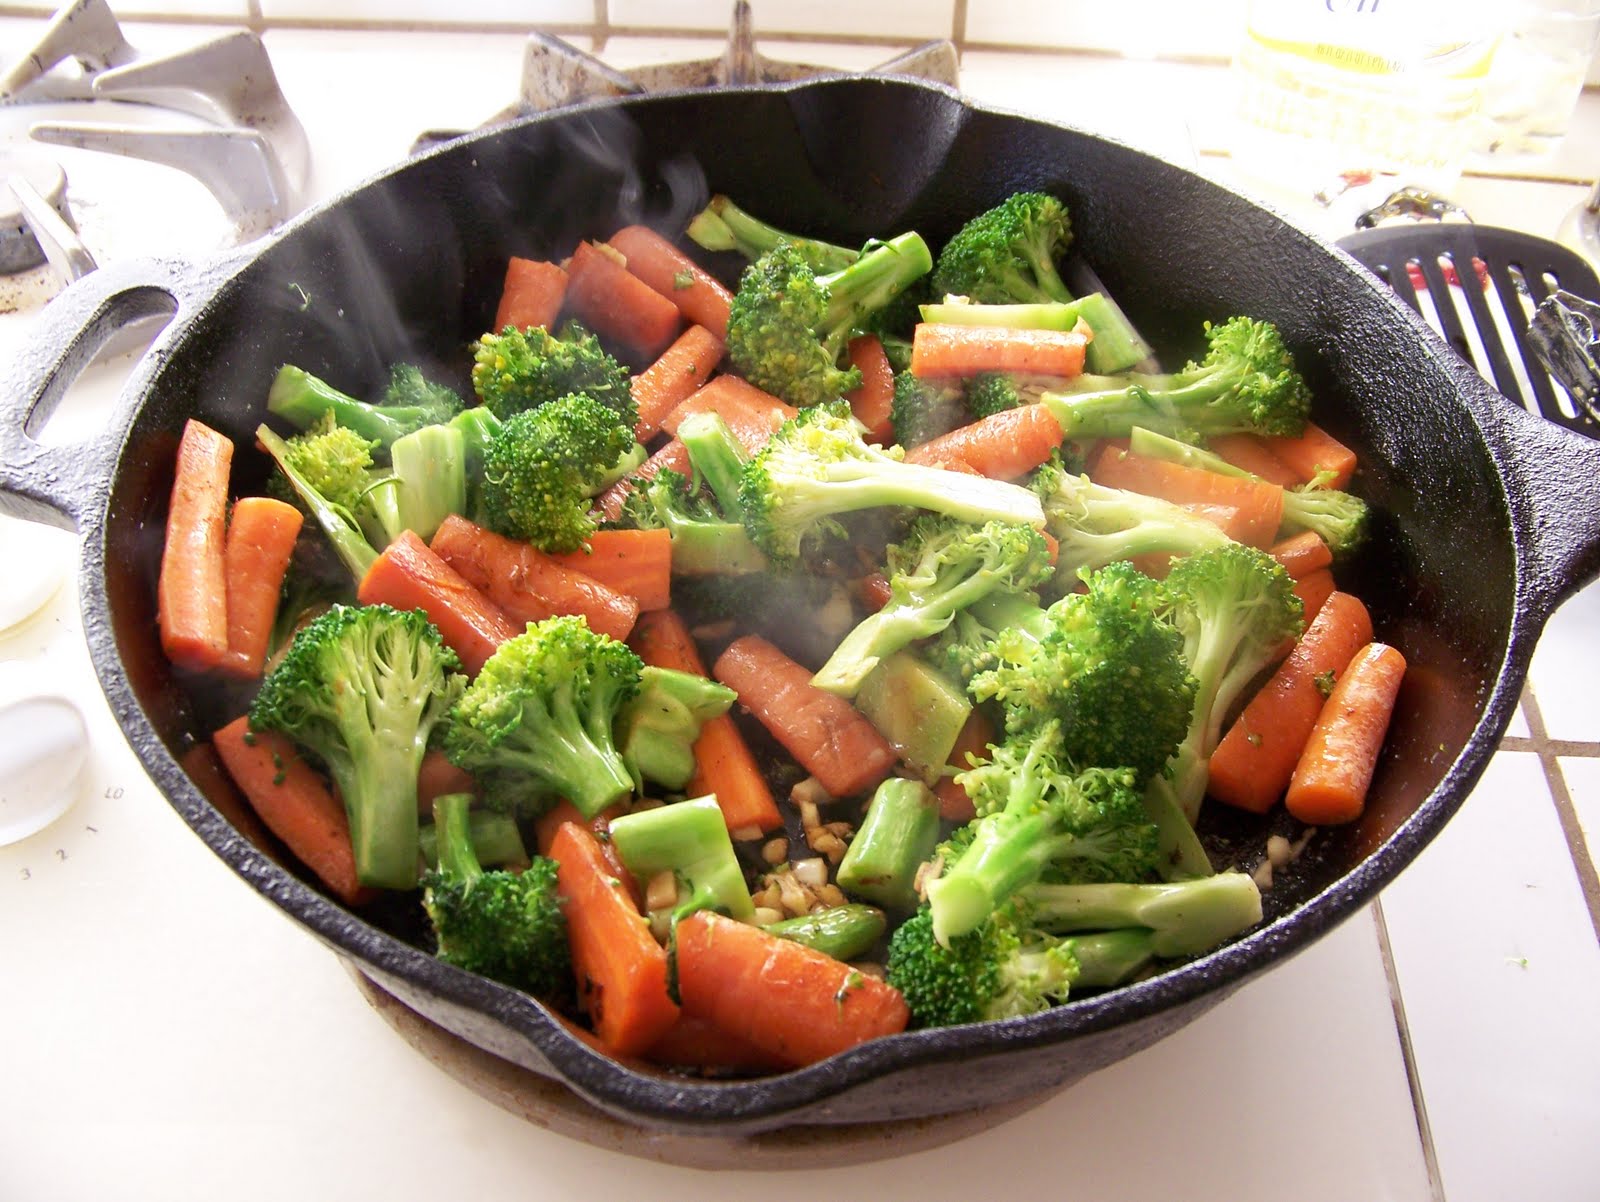 Видео как приготовить овощи. Приготовленные овощи. Отварные овощи. Припущенные овощи. Пареные овощи.